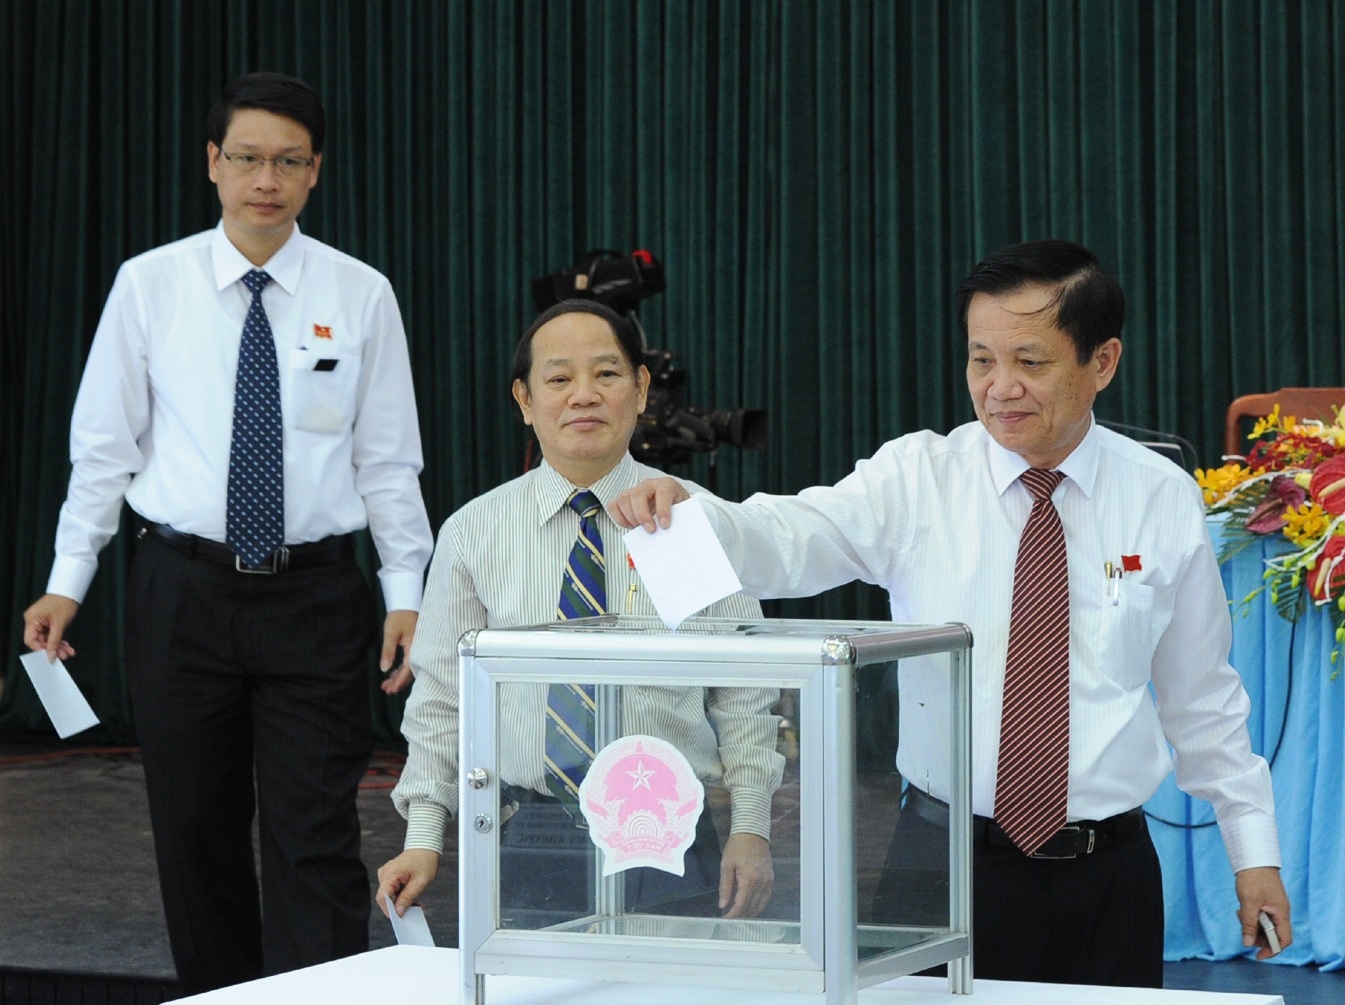  Bí thư Thành ủy, Chủ tịch HĐND thành phố Đà Nẵng và các đại biểu bỏ phiếu bầu bổ sung Ủy viên UBND thành phố khóa VIII, nhiệm kỳ 2011- 2016.